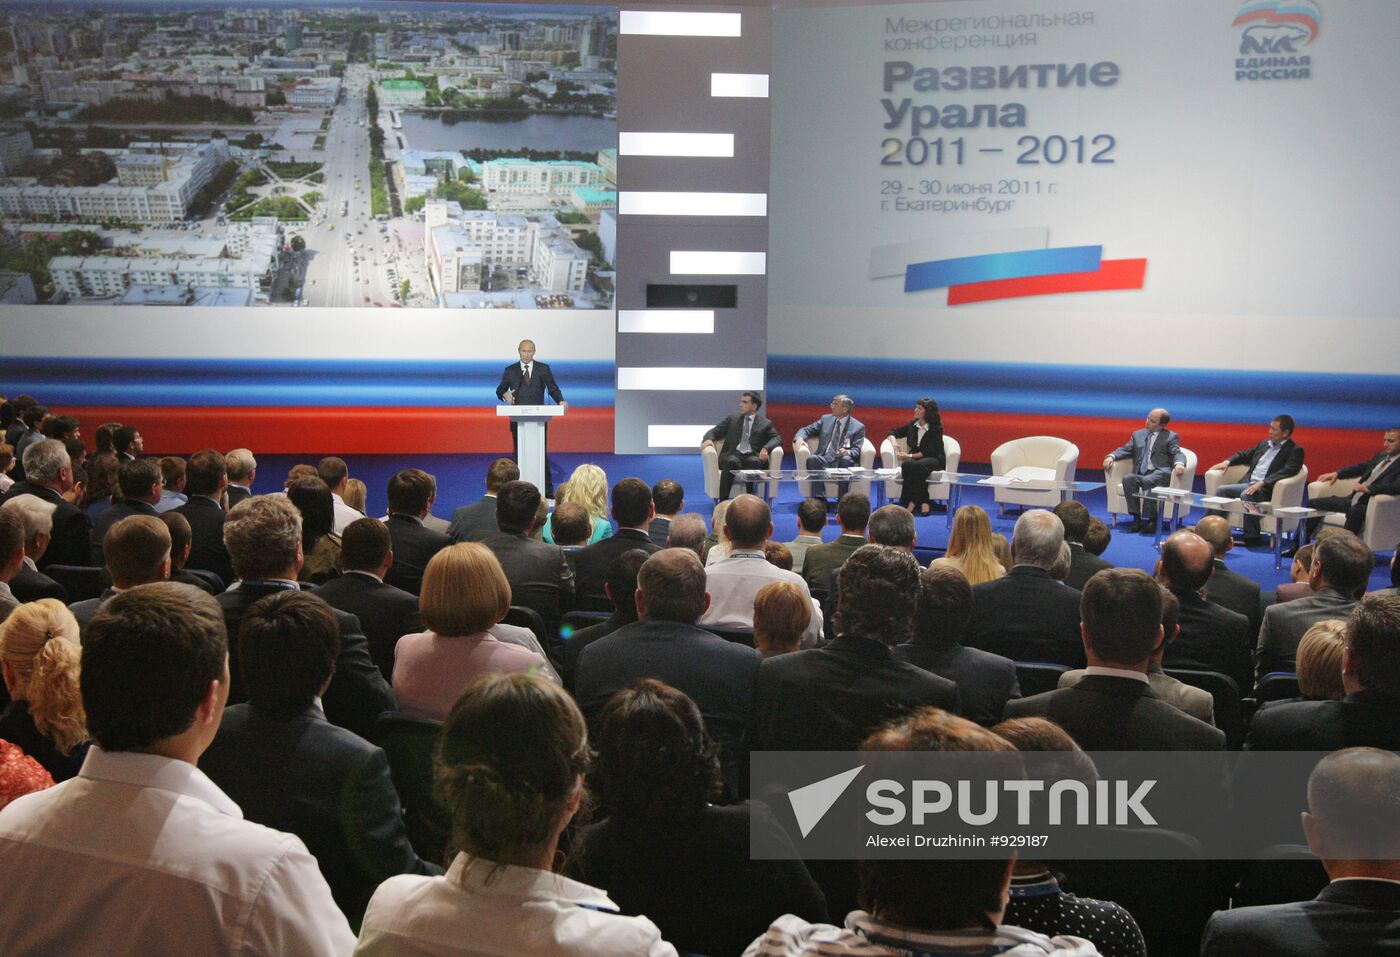 Prime Minister Vladimir Putin on working visit to Yekaterinburg